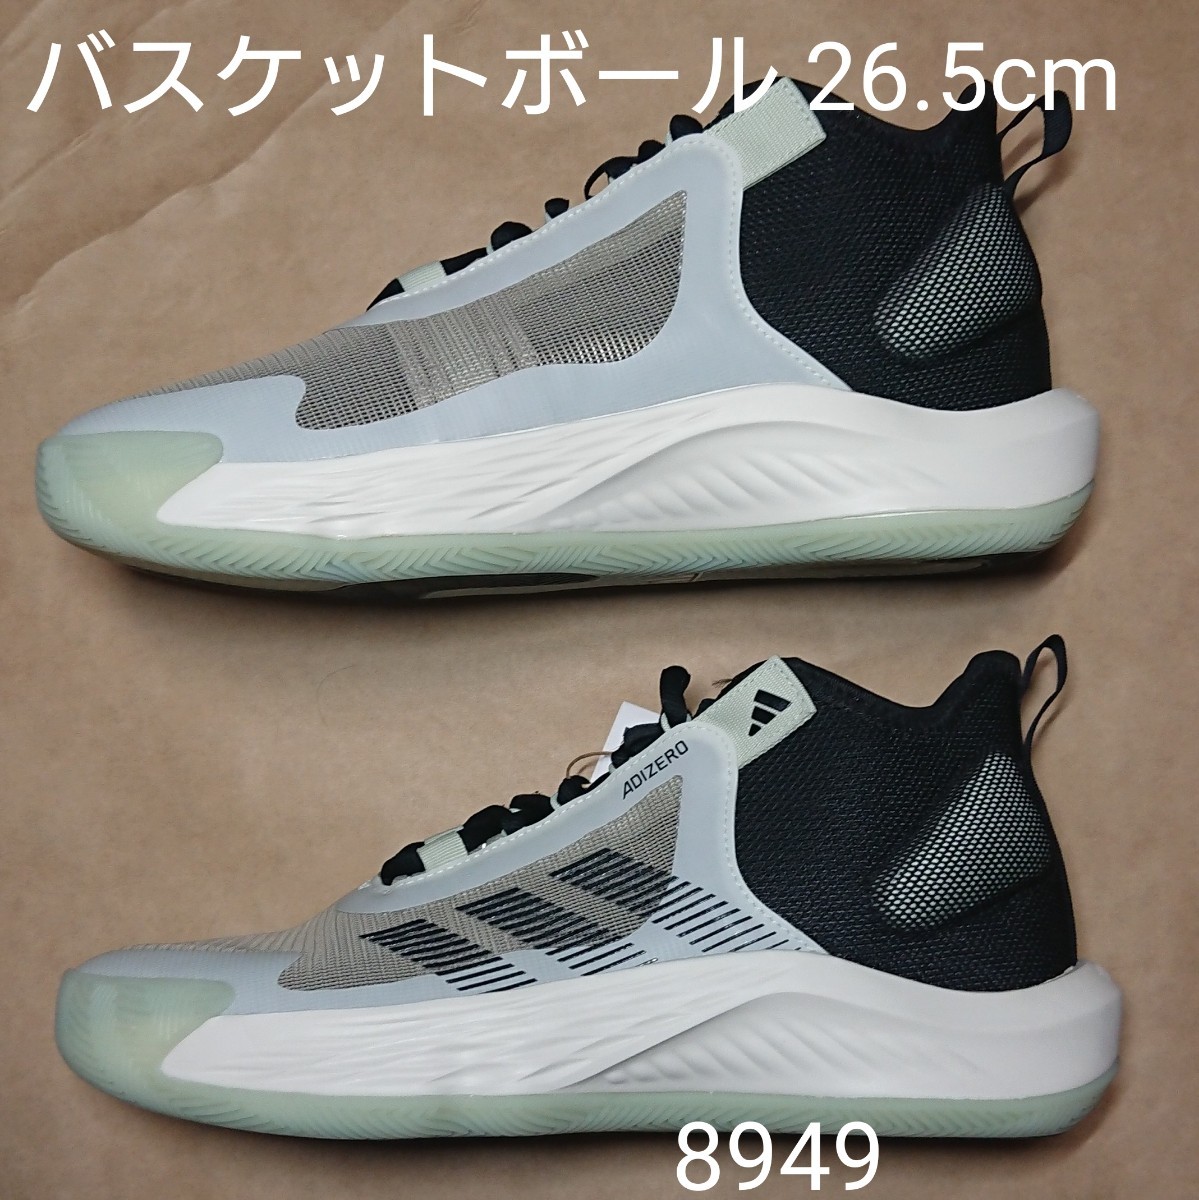 バスケットボールシューズ26.5cm アディダス adidas Adizero Select 8949